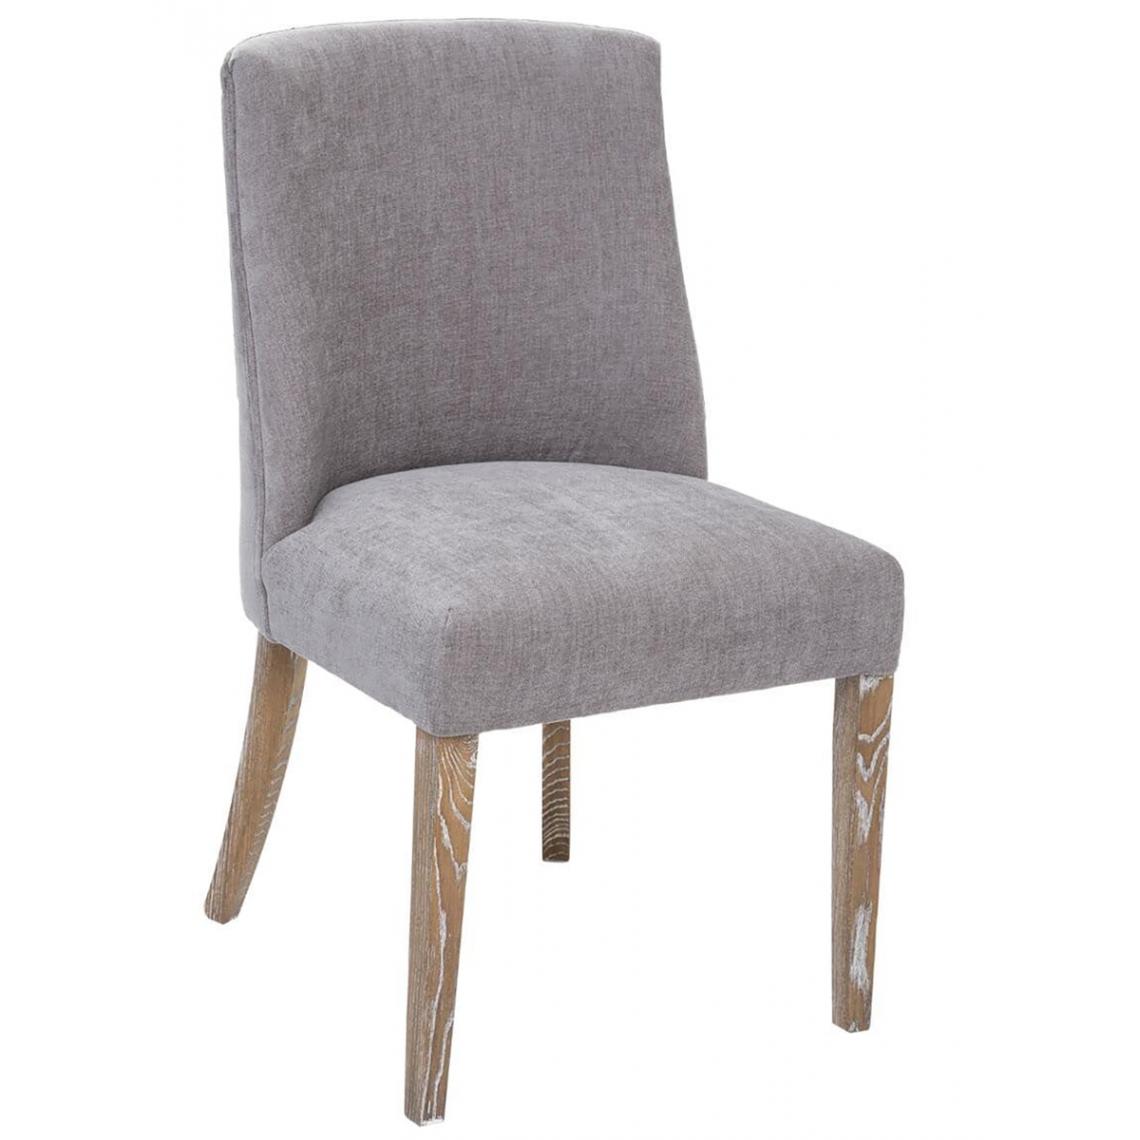 Pegane - Lot de 2 chaises de salle à manger en bois coloris gris - Longueur 49,5 x Profondeur 58,5 x Hauteur 89,5 cm - Chaises